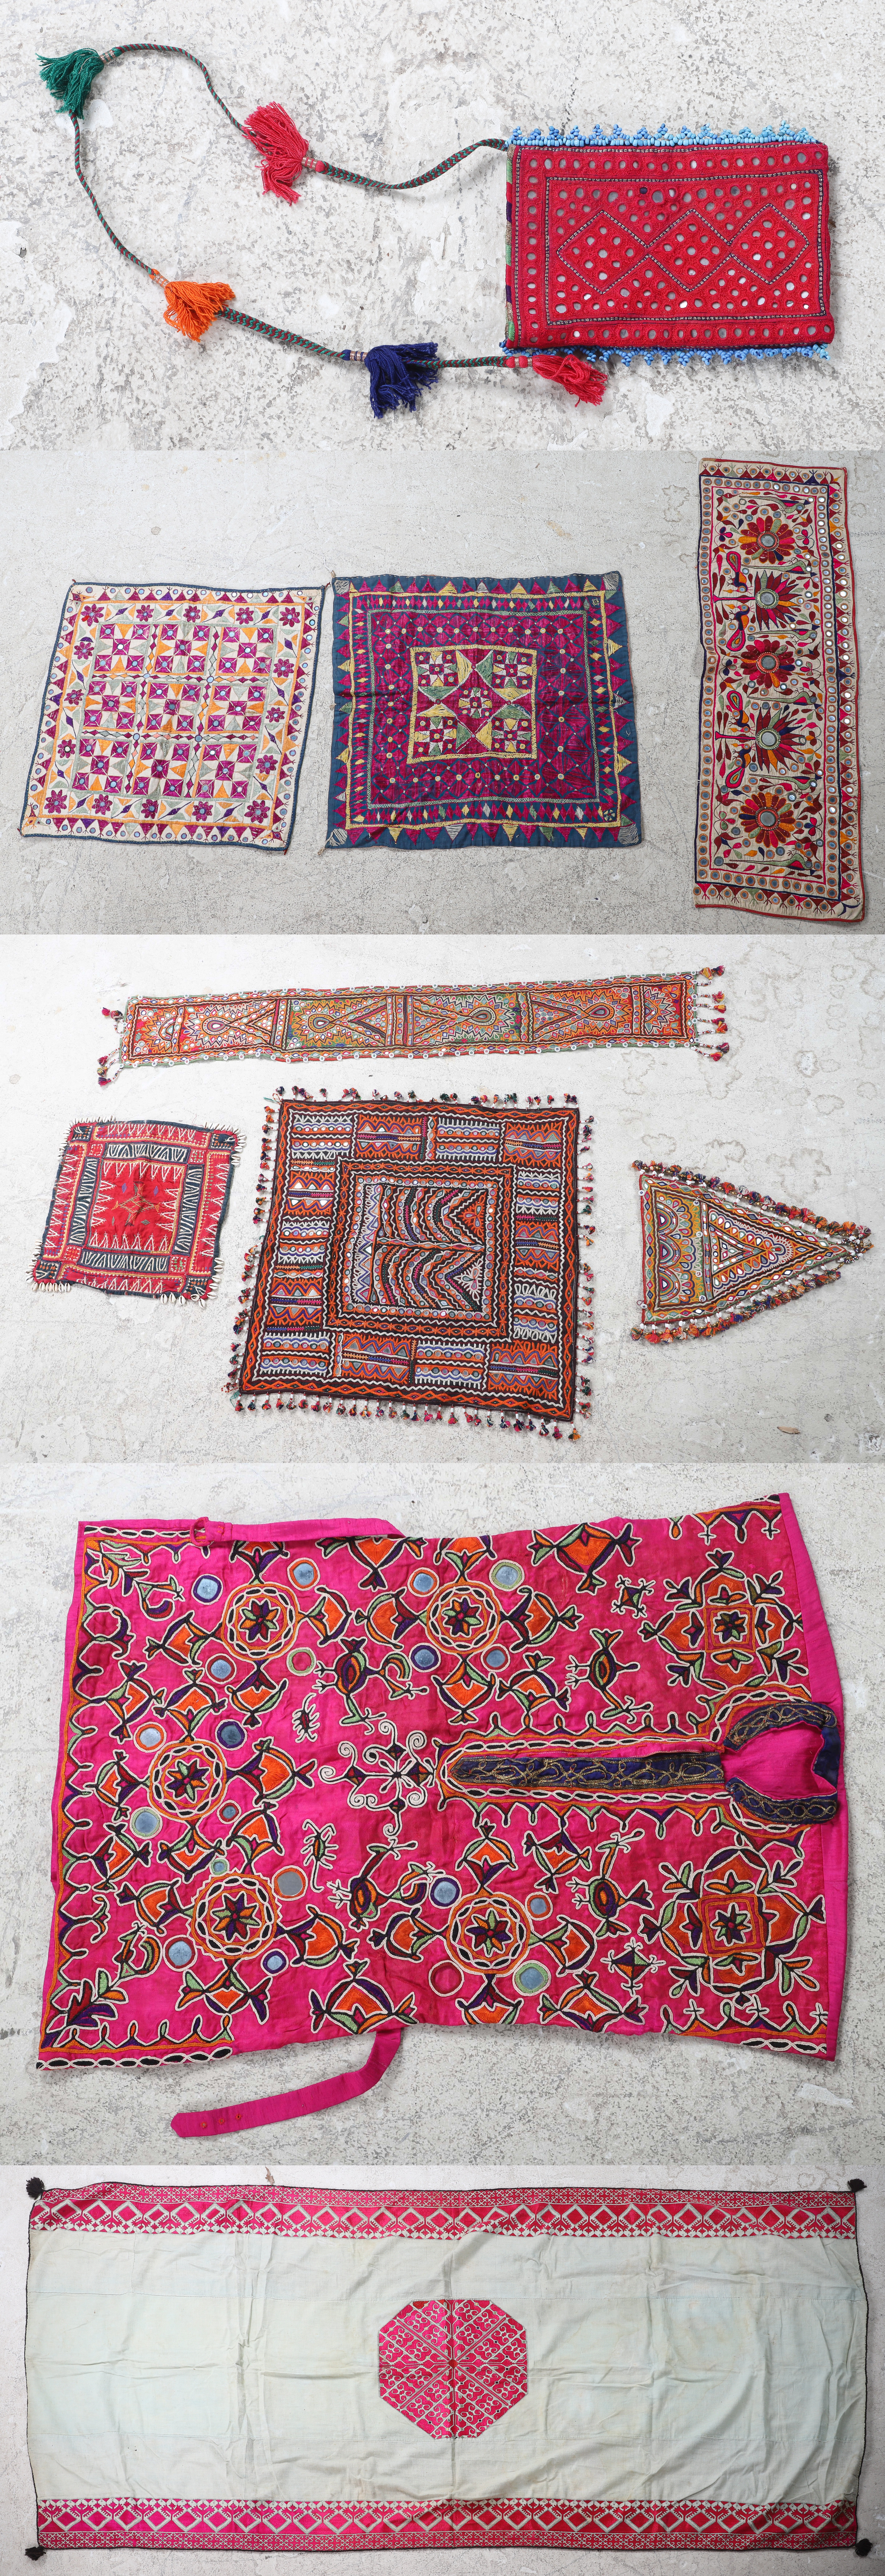 Banjara fabrics and vest vest 3ca778